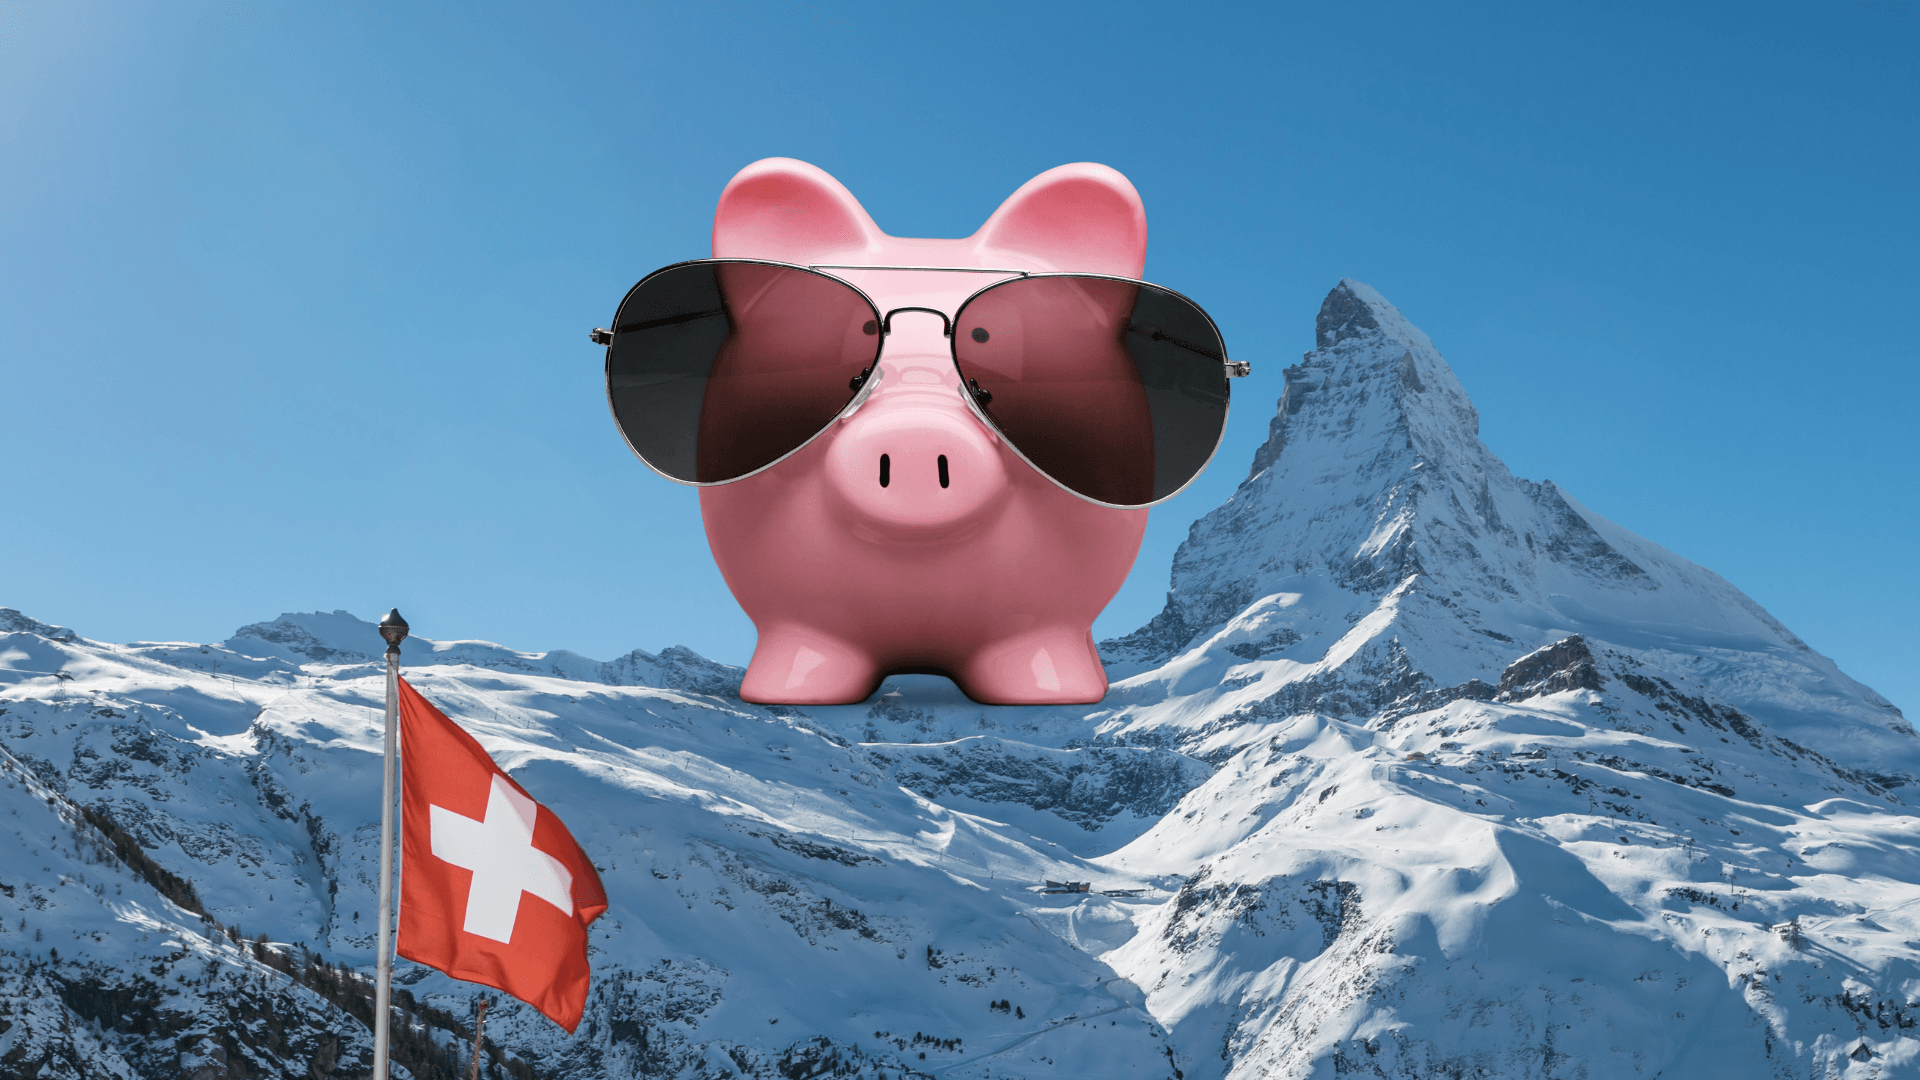 Geld sparen: Tipps fürs Geld sparen in der Schweiz